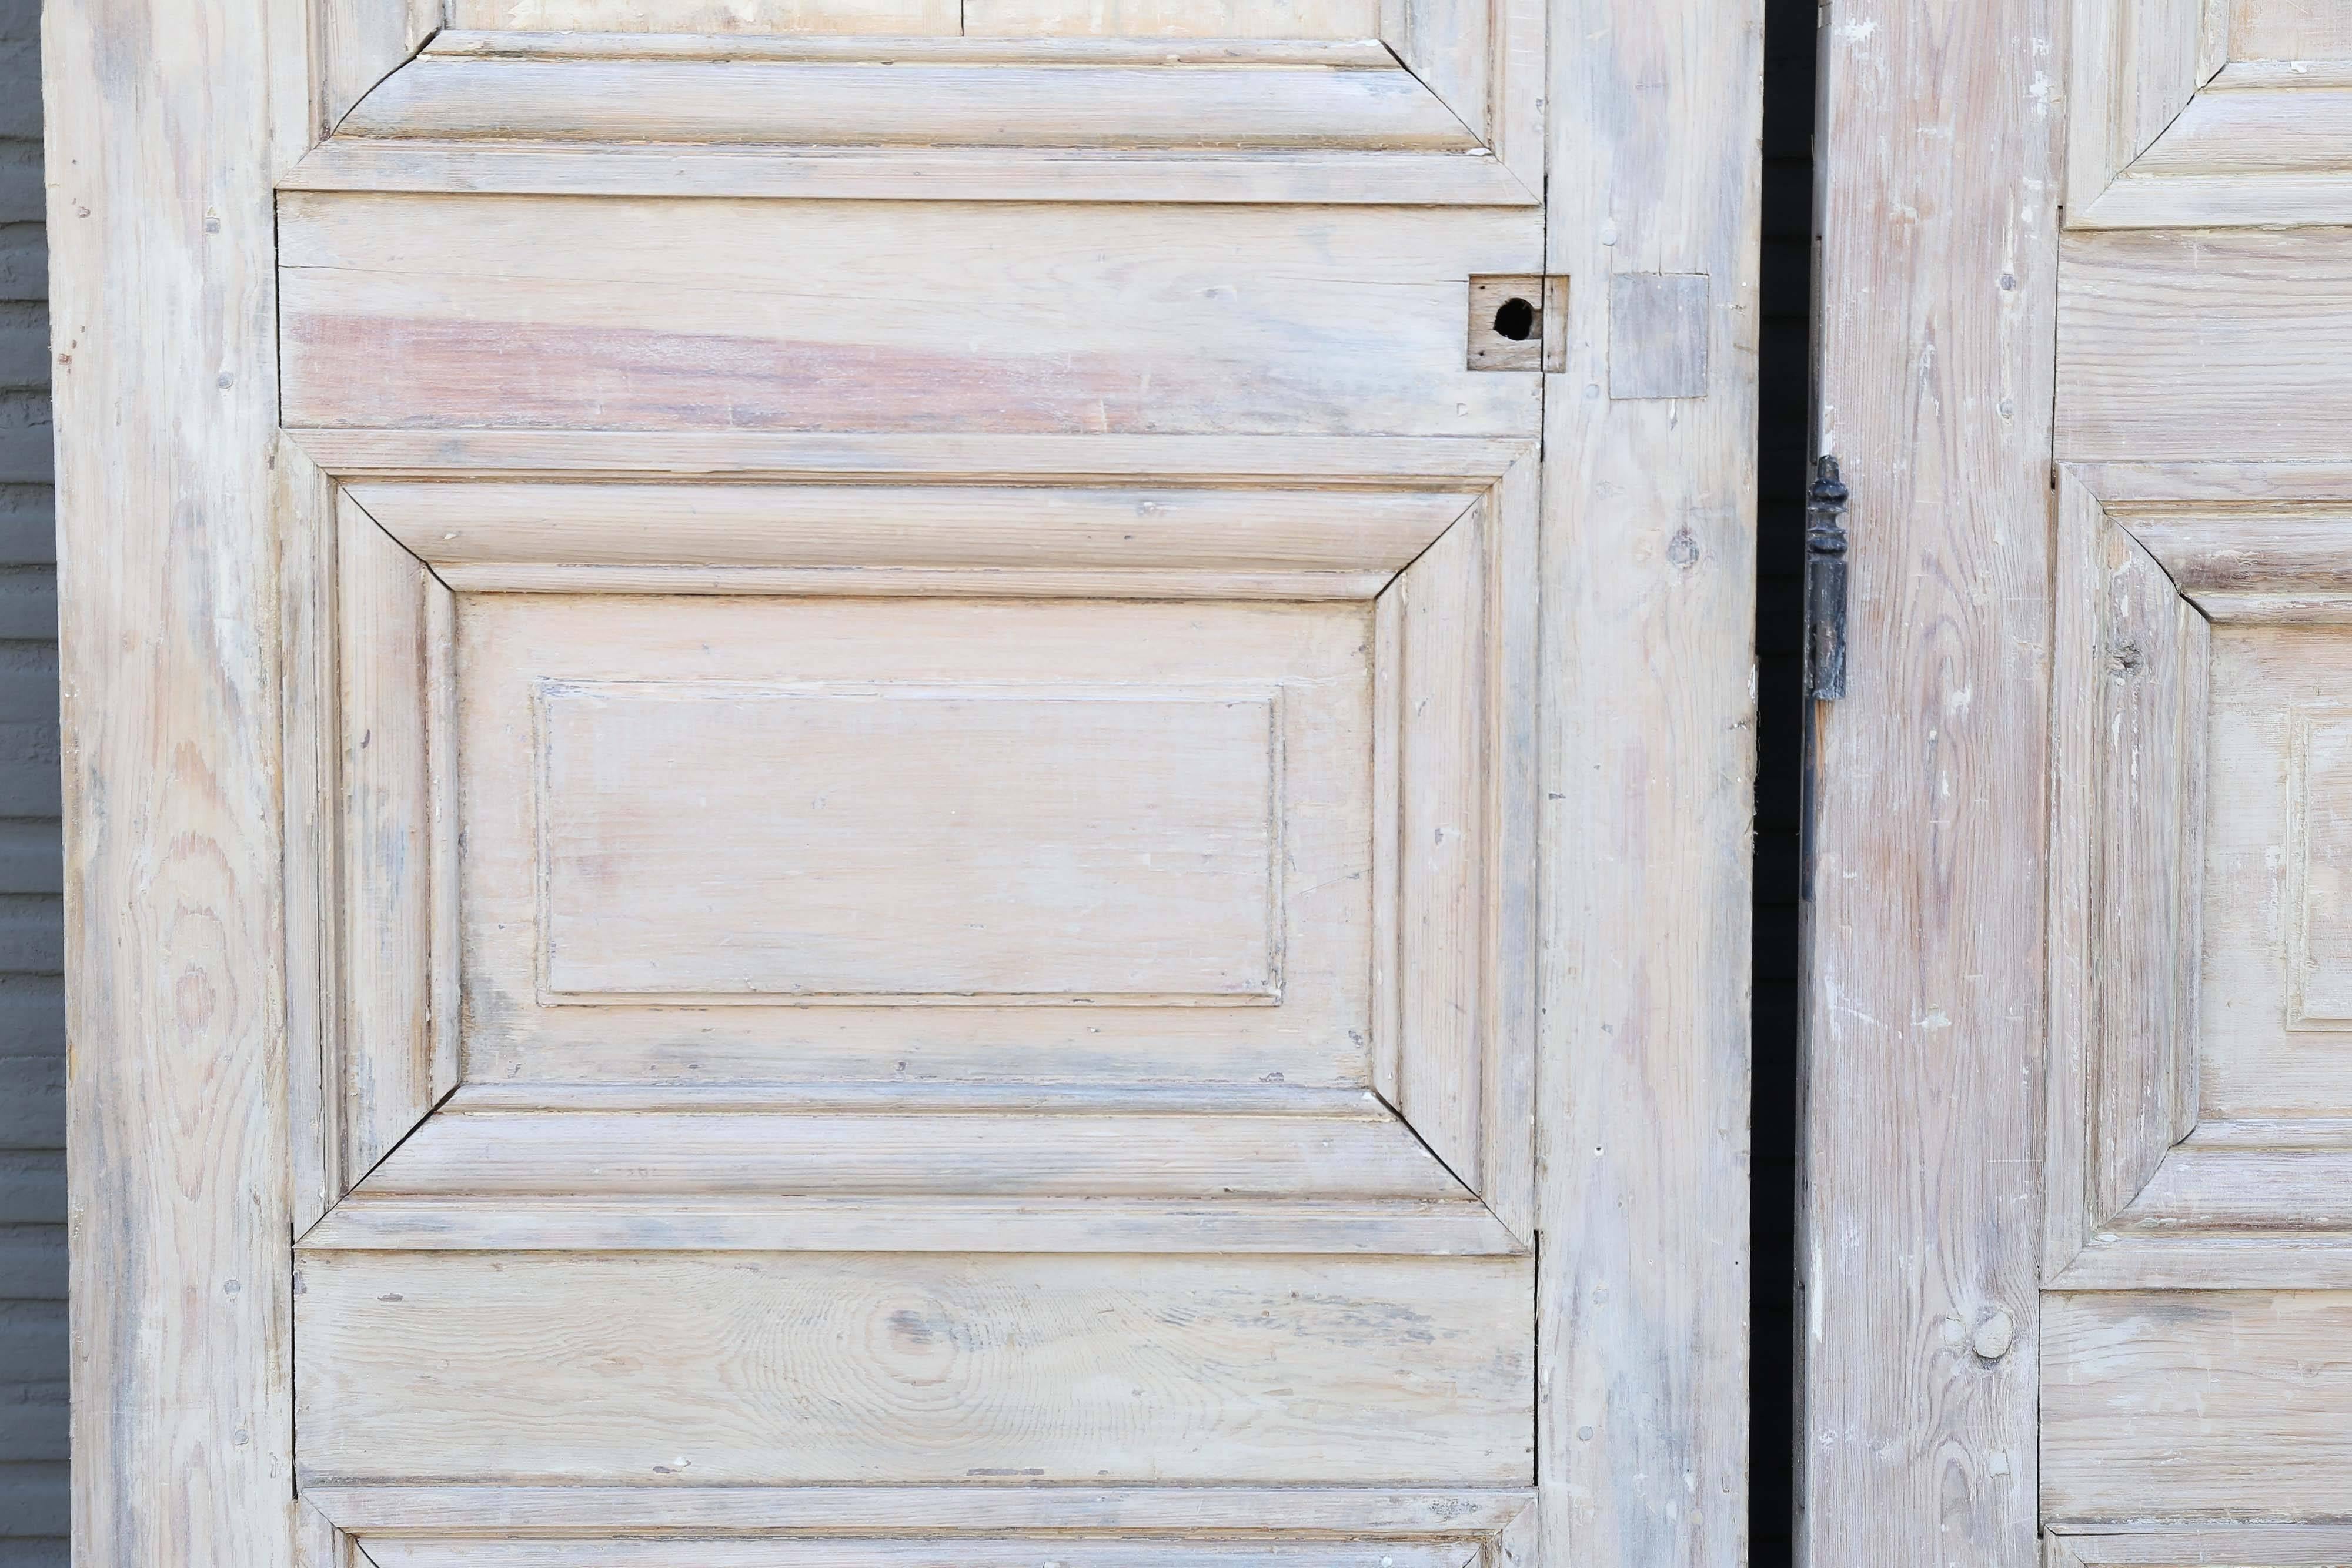 Louis-XVI-Türen aus Kiefernholz, verkauft als Paar. Die ursprüngliche Farbe wurde entfernt. Jede Tür ist 26,25 Zoll breit und die Gesamtbreite des Paares beträgt 52,5 Zoll.

Hinweis: Die ursprüngliche/frühe Oberfläche von antikem und altem Metall